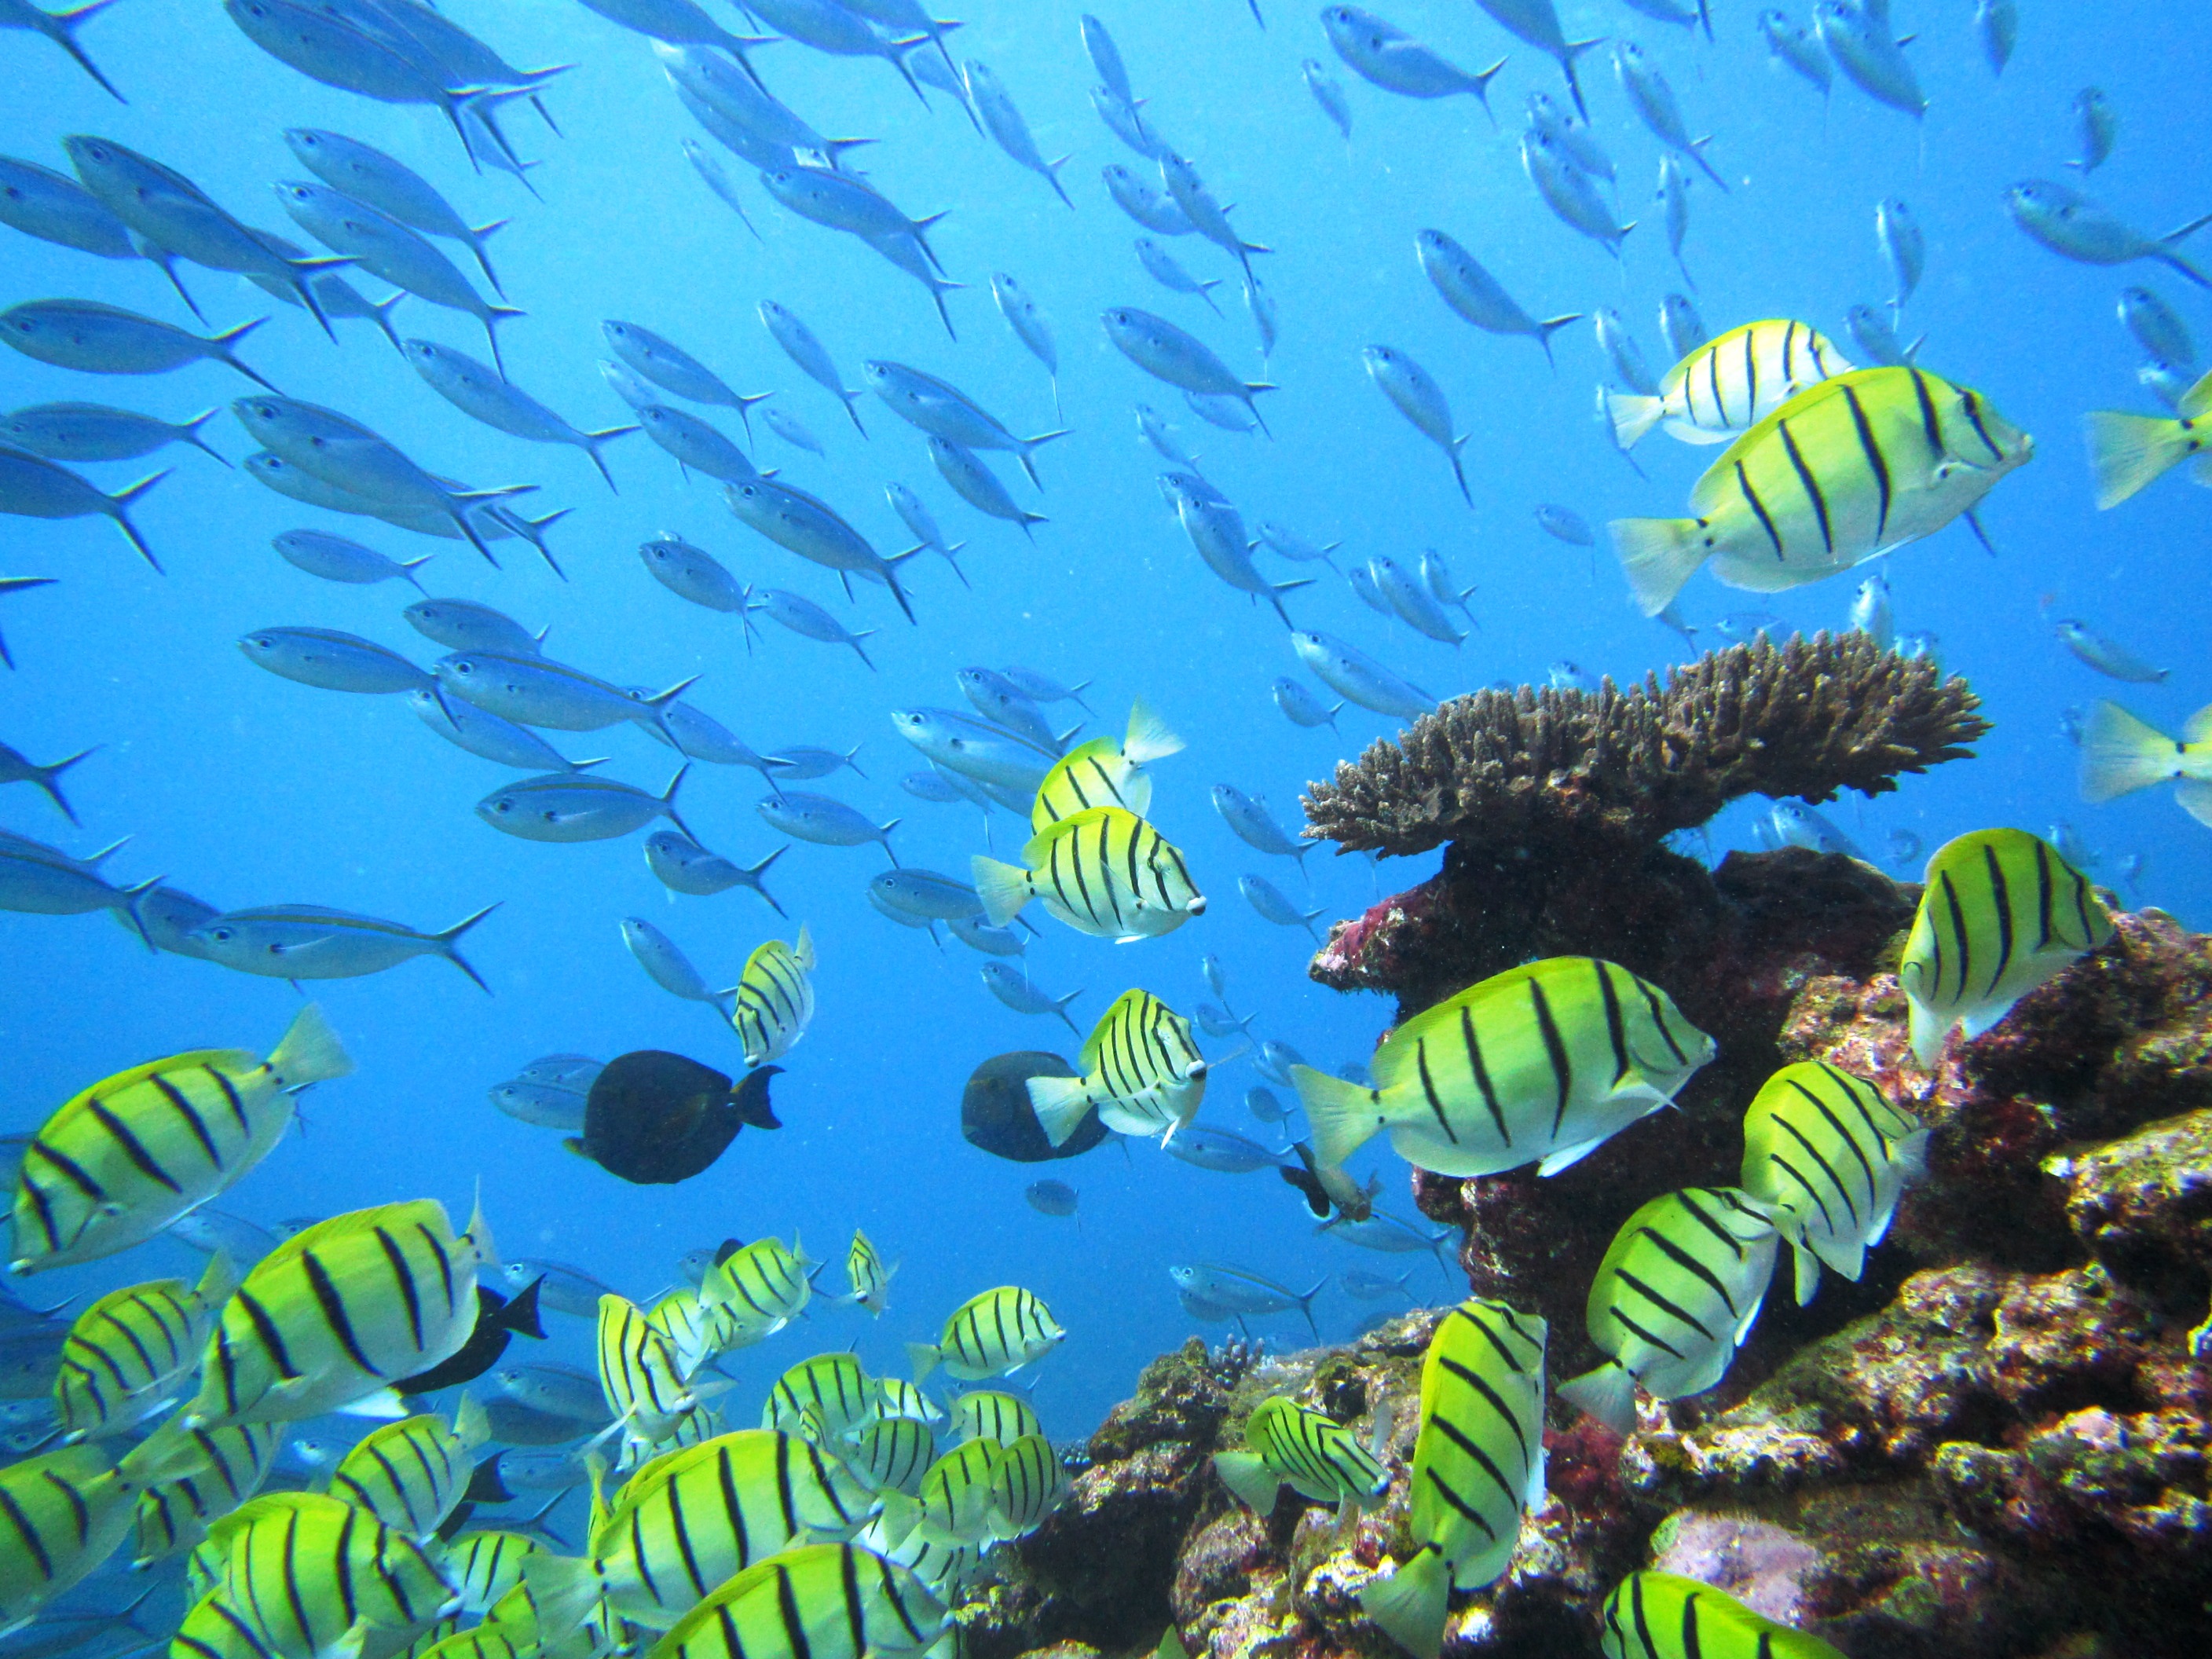 Fish swimming around an underwater reef